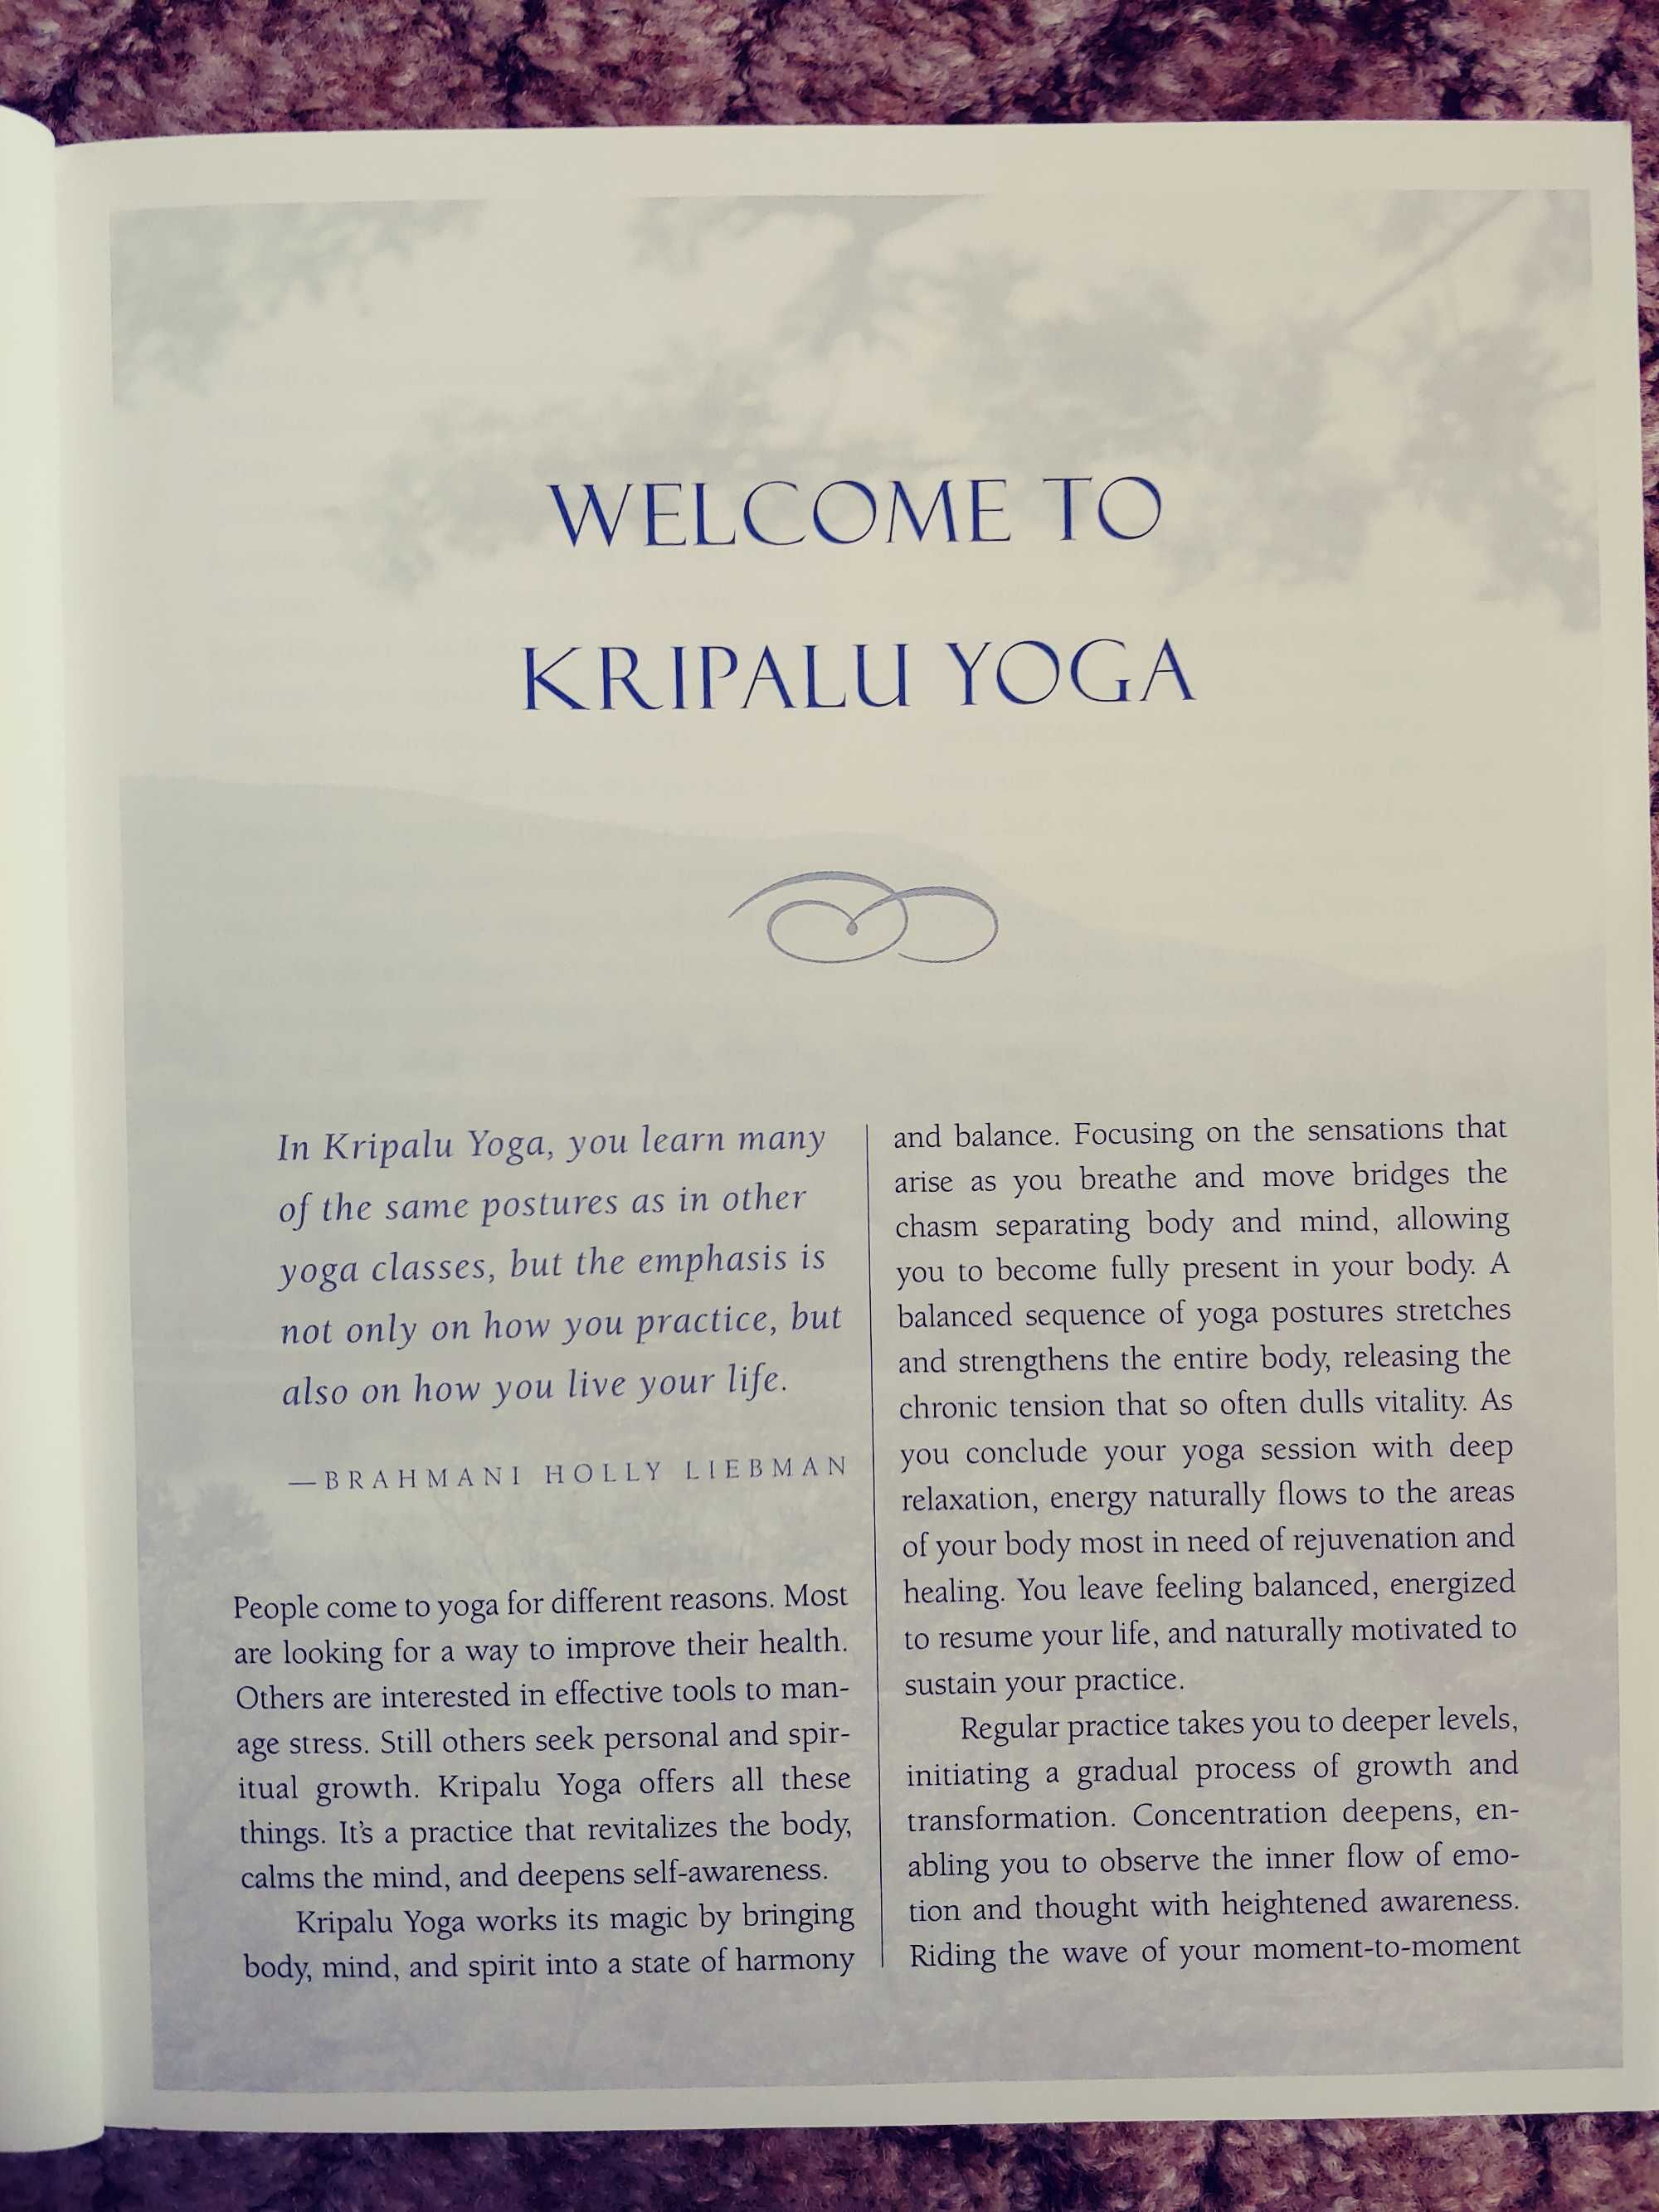 Kripalu Yoga - książka o praktyce jogi w języku angielskim